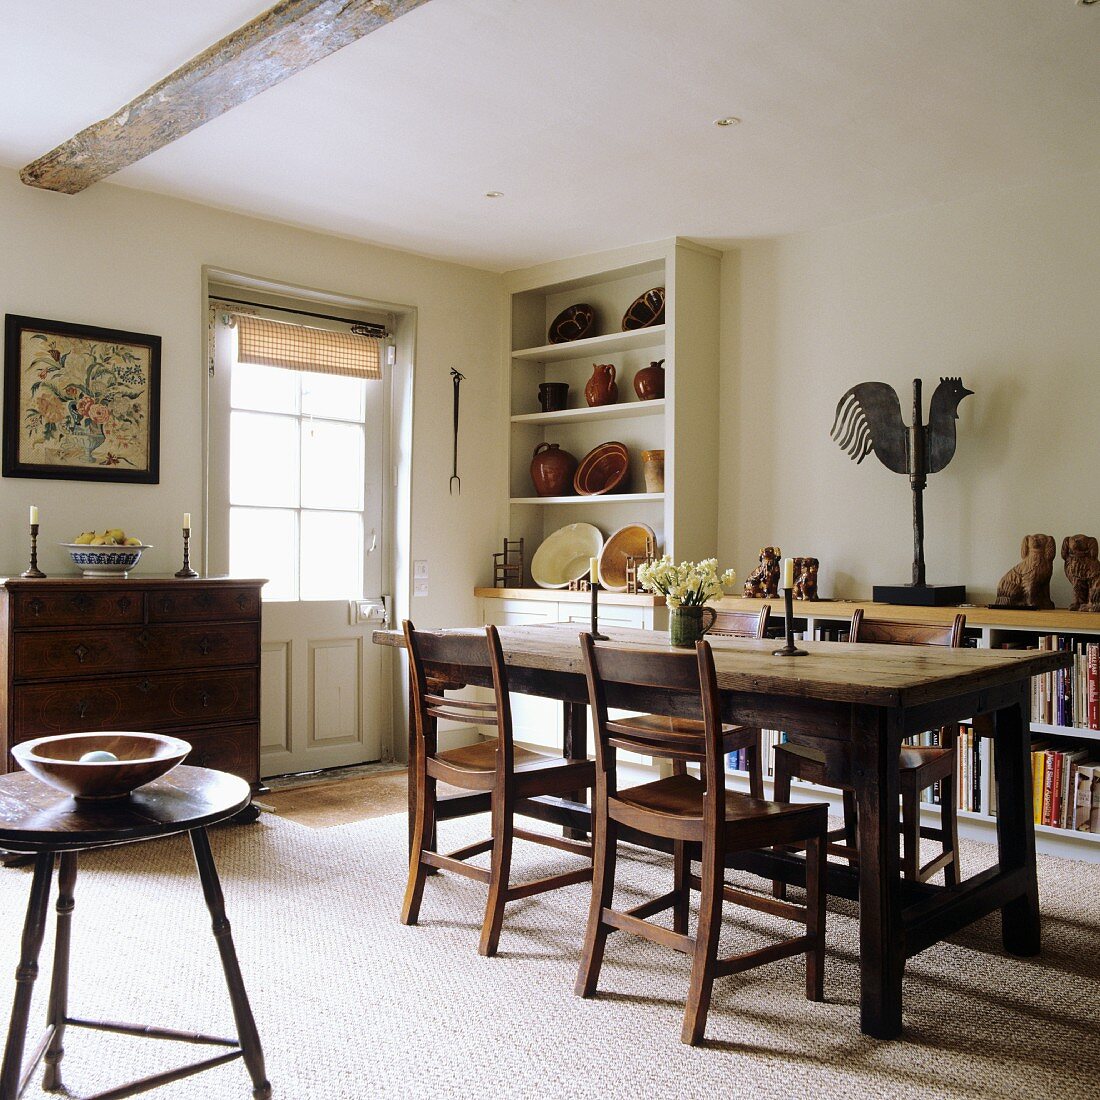 Ländliches Esszimmer - Esstisch und Stühle aus Holz, in Zimmerecke Regalschrank mit Keramikschüsseln